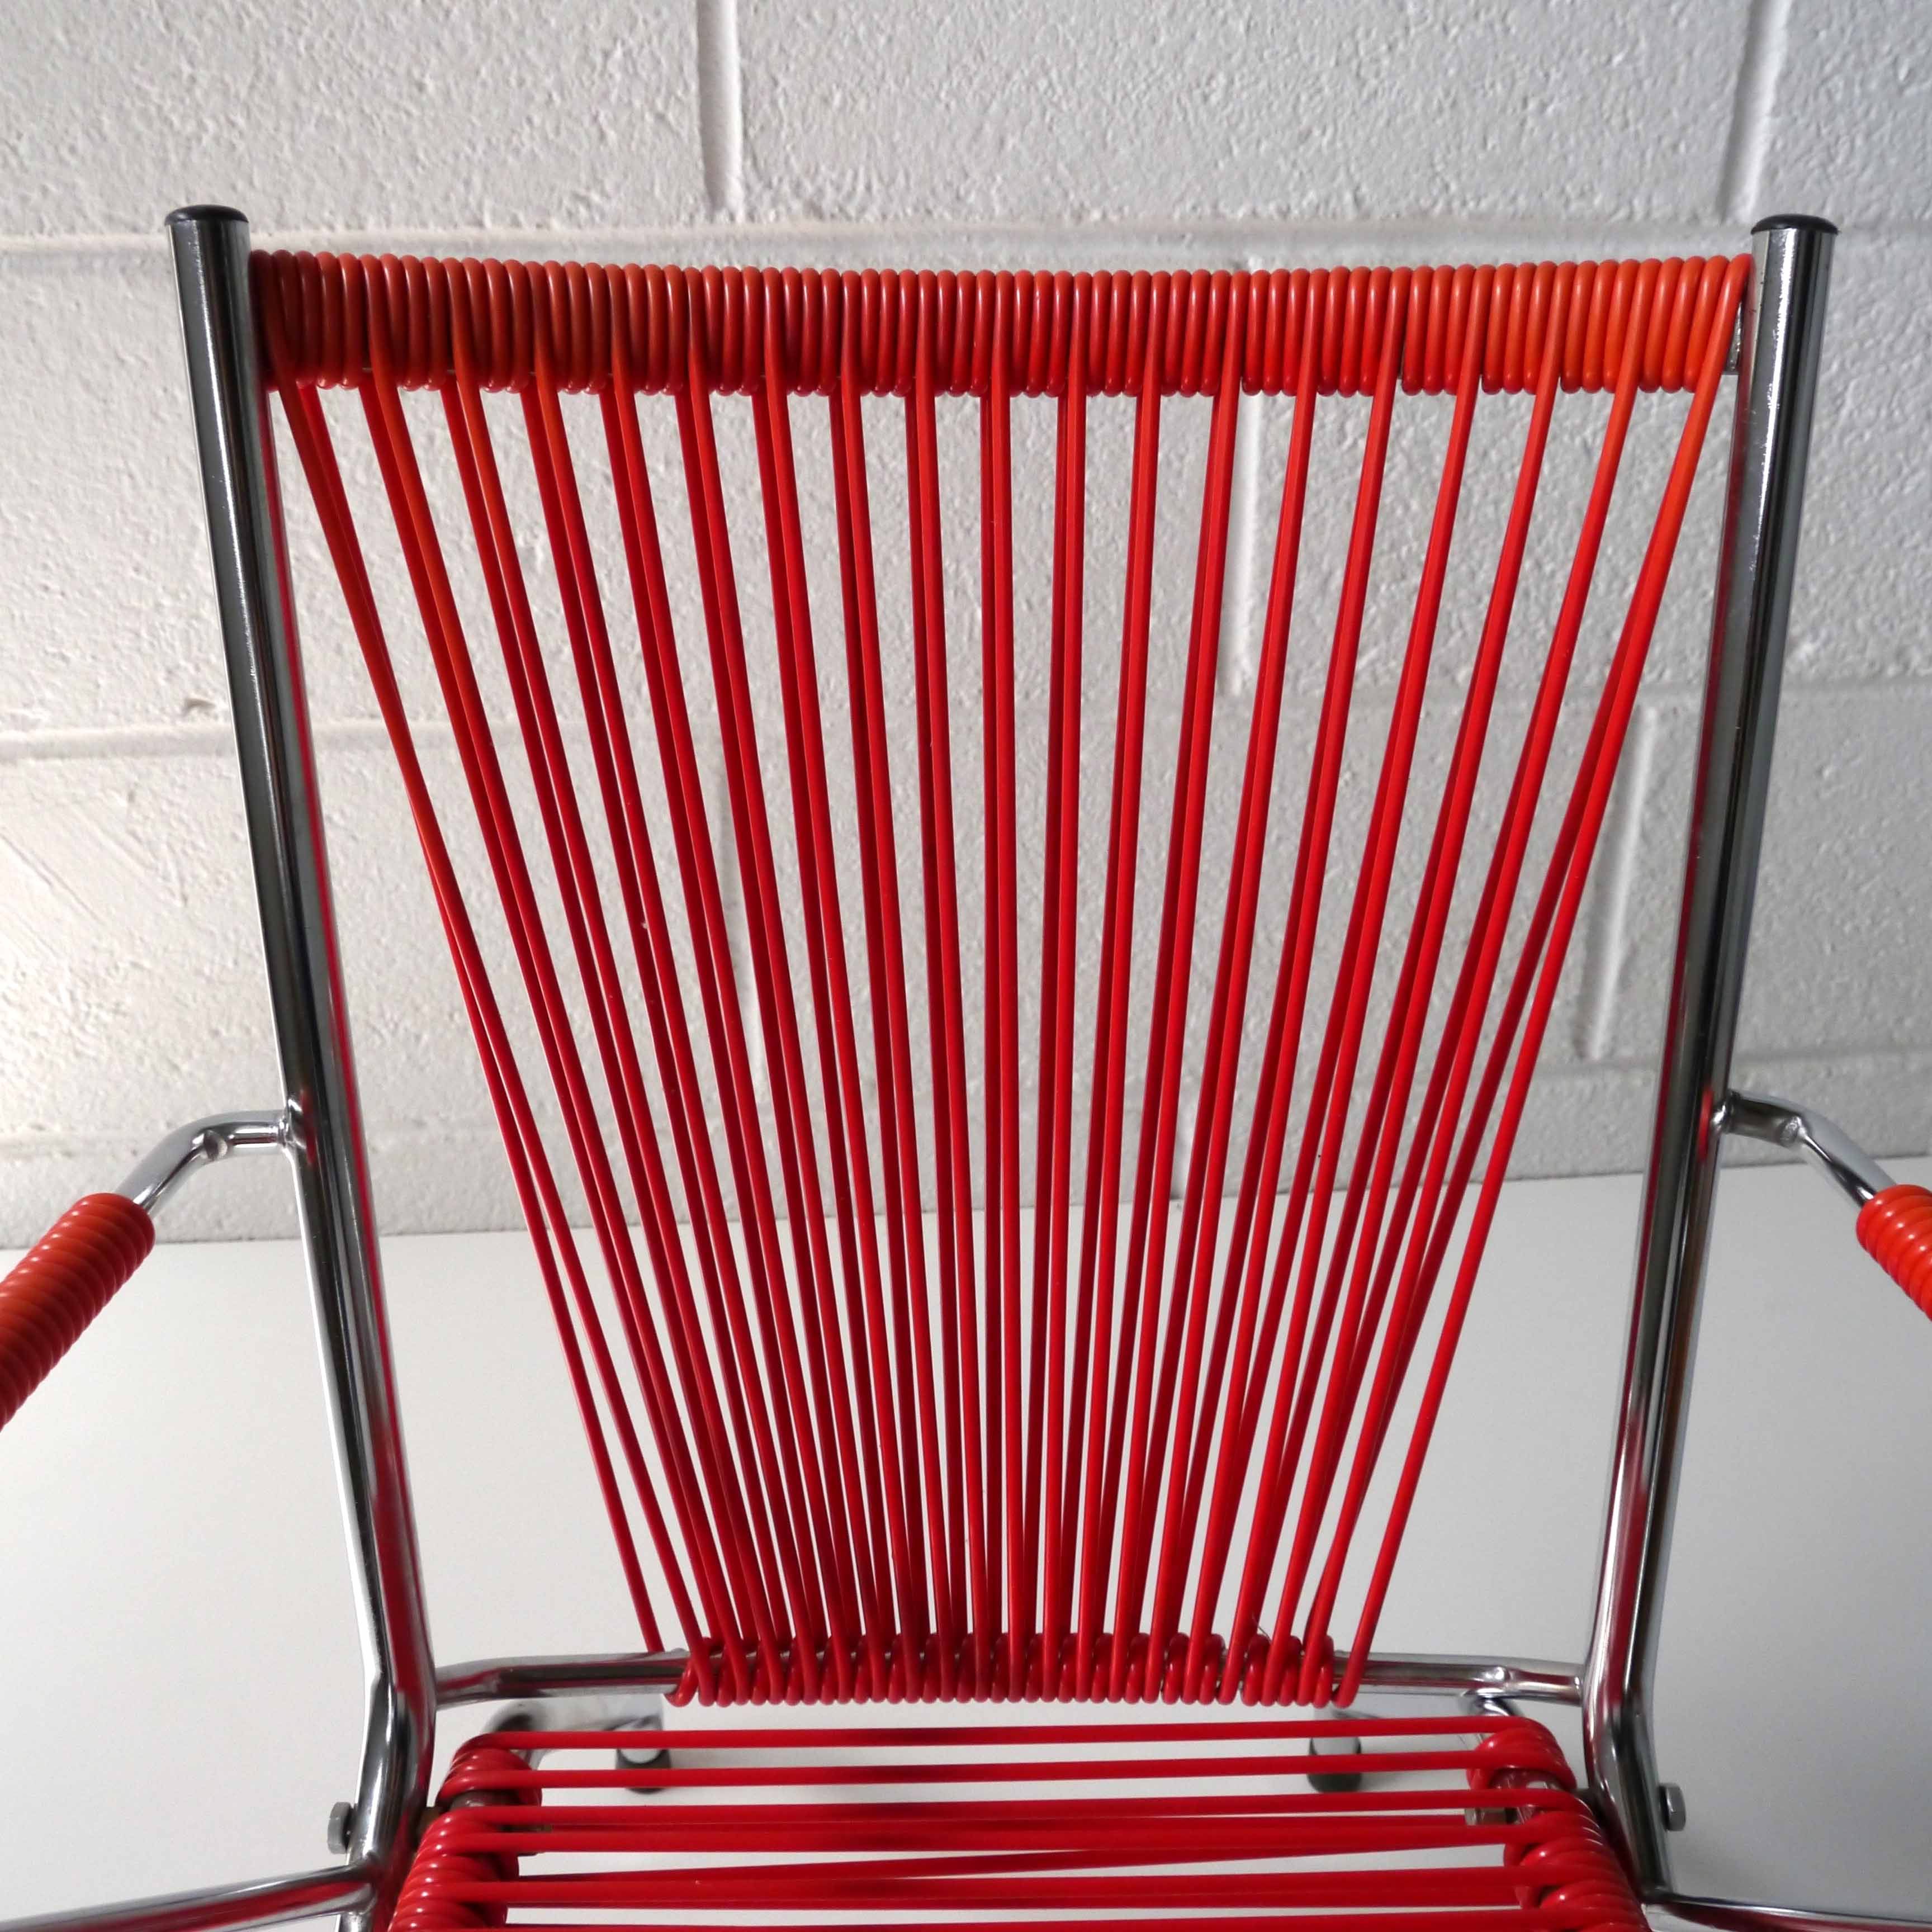 Children red chair